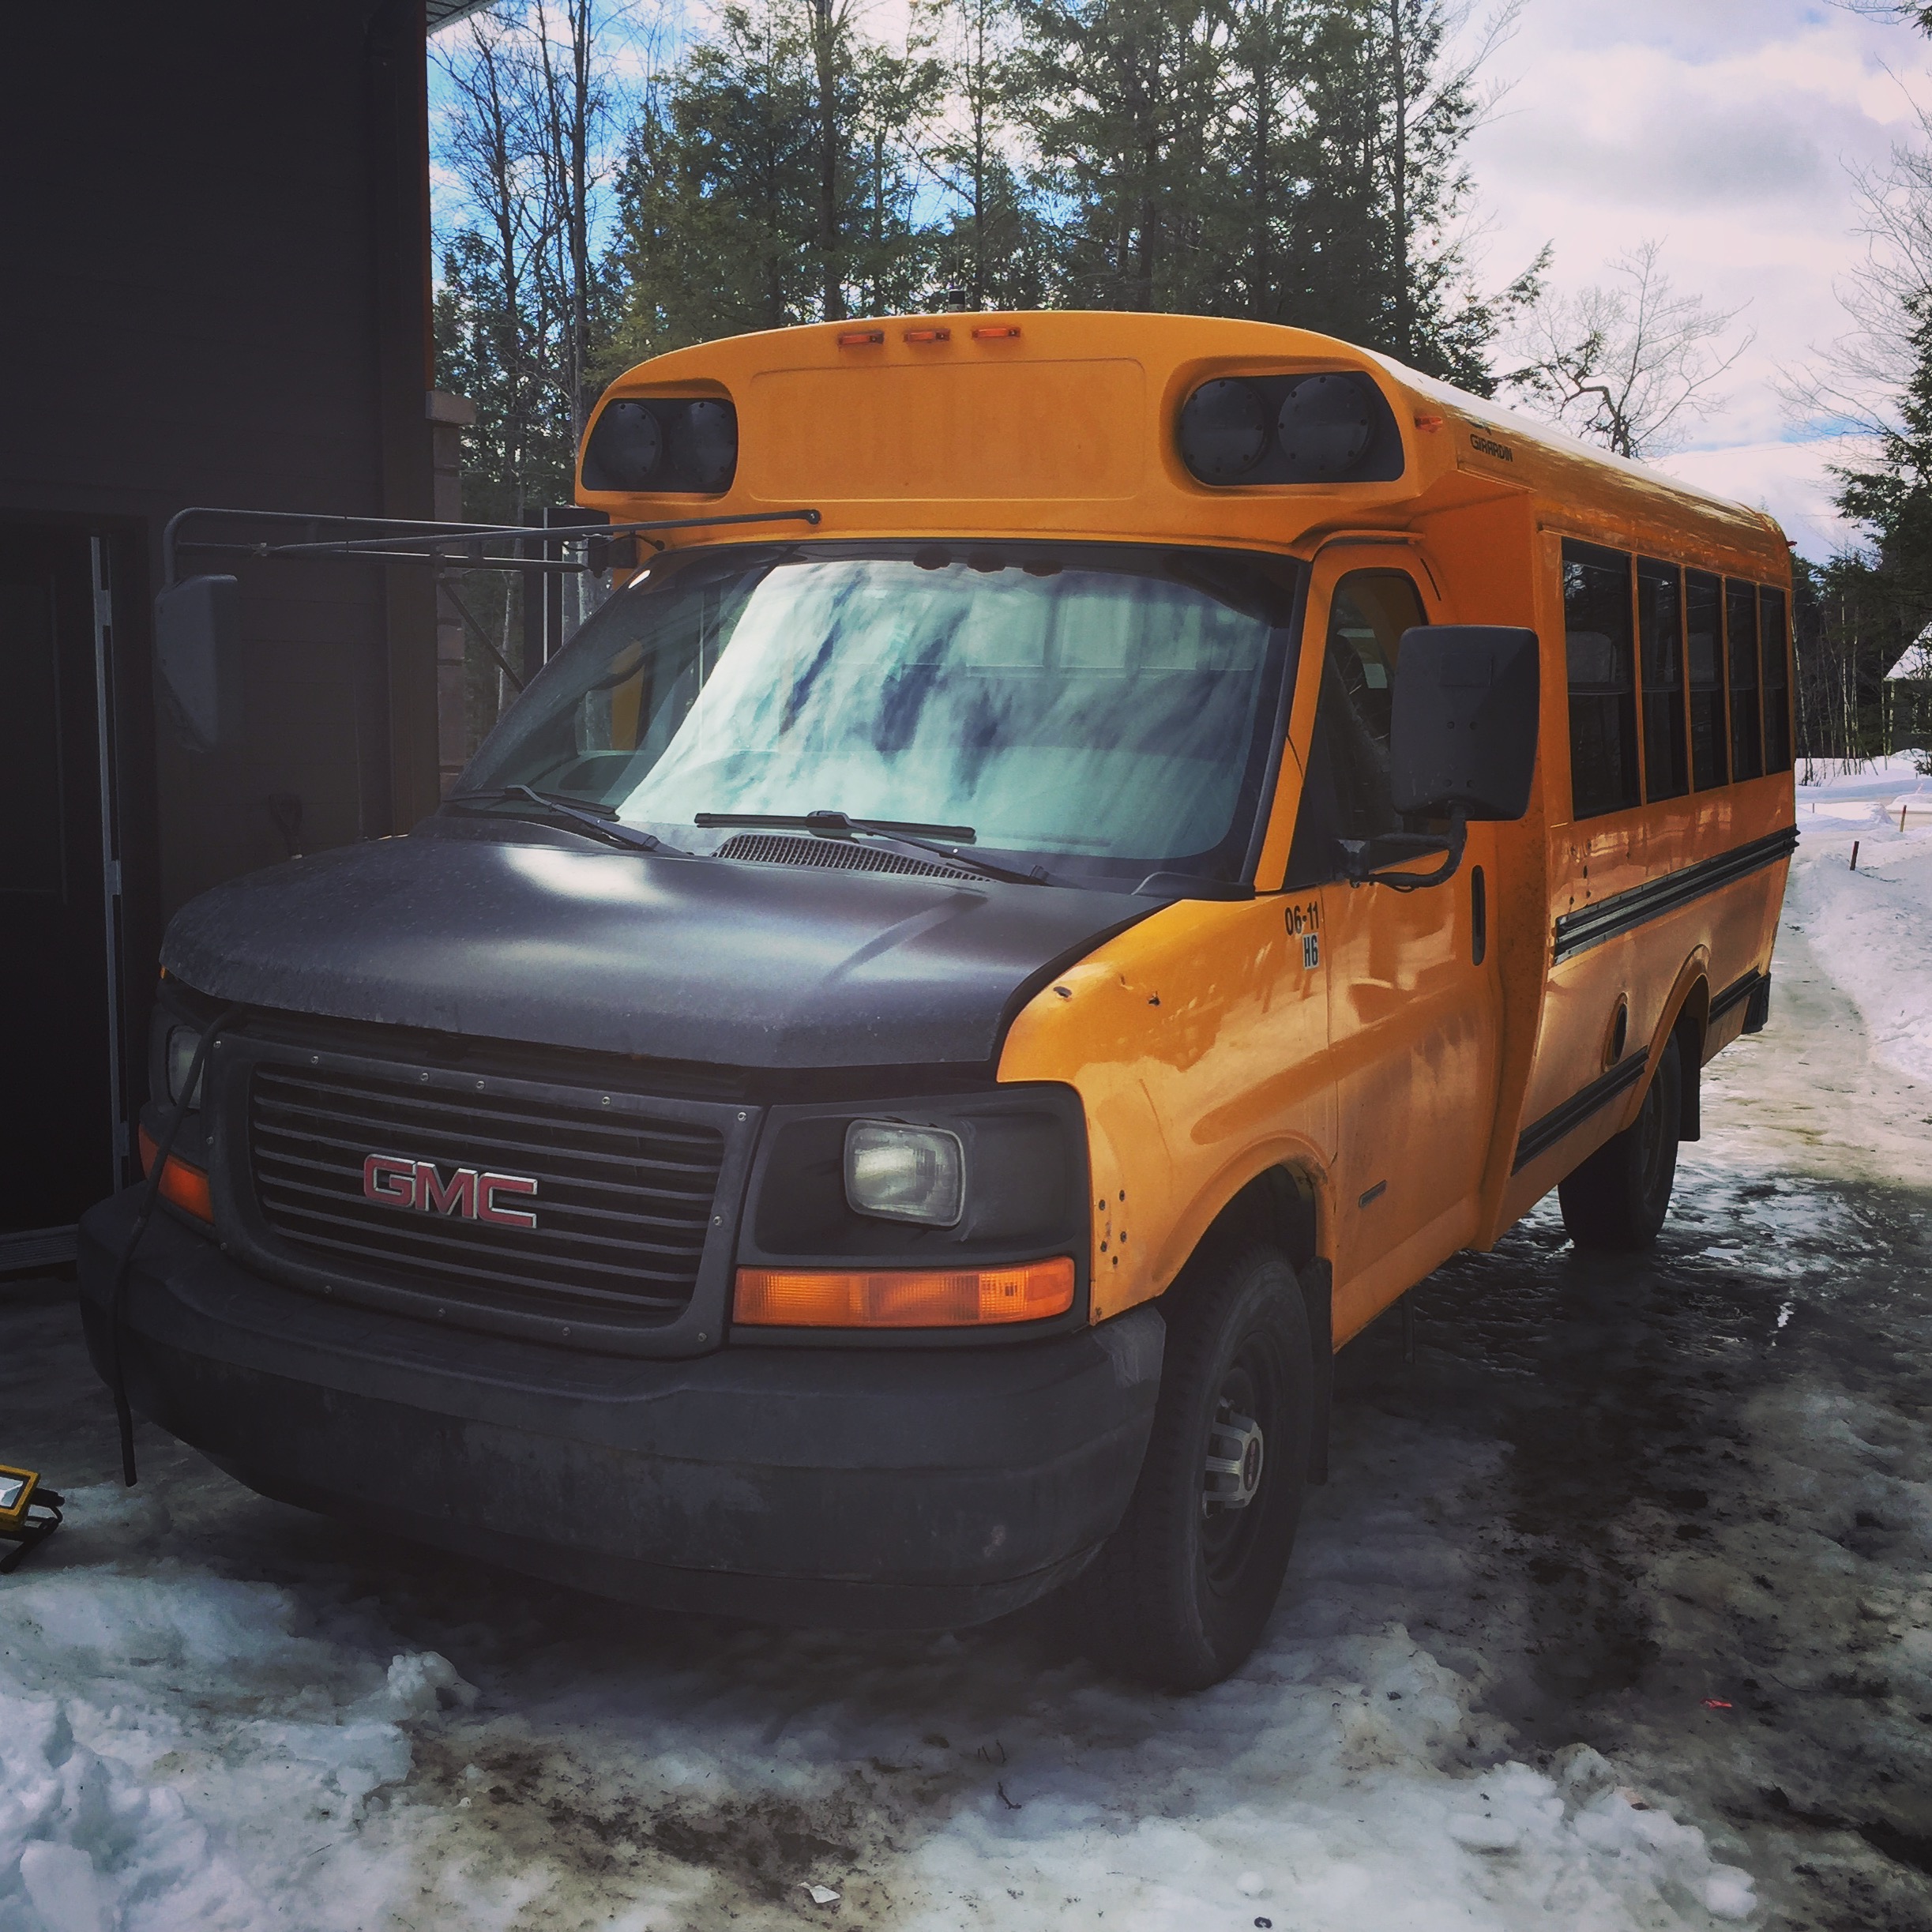 autobus scolaire trip voyage conversion